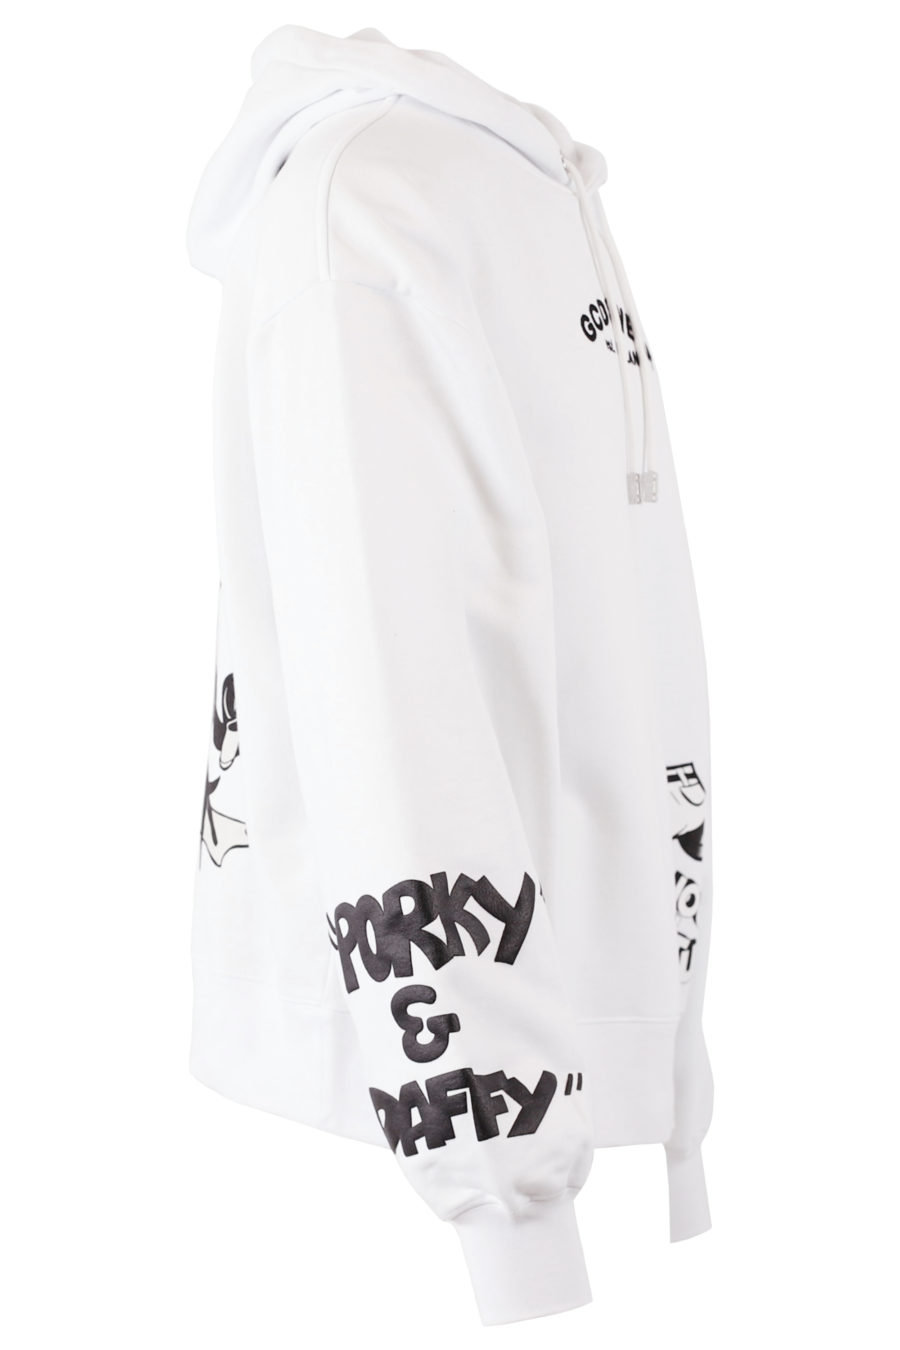 Camisola com capuz branca com estampado gráfico Looney Tunes - cópia IMG 7673